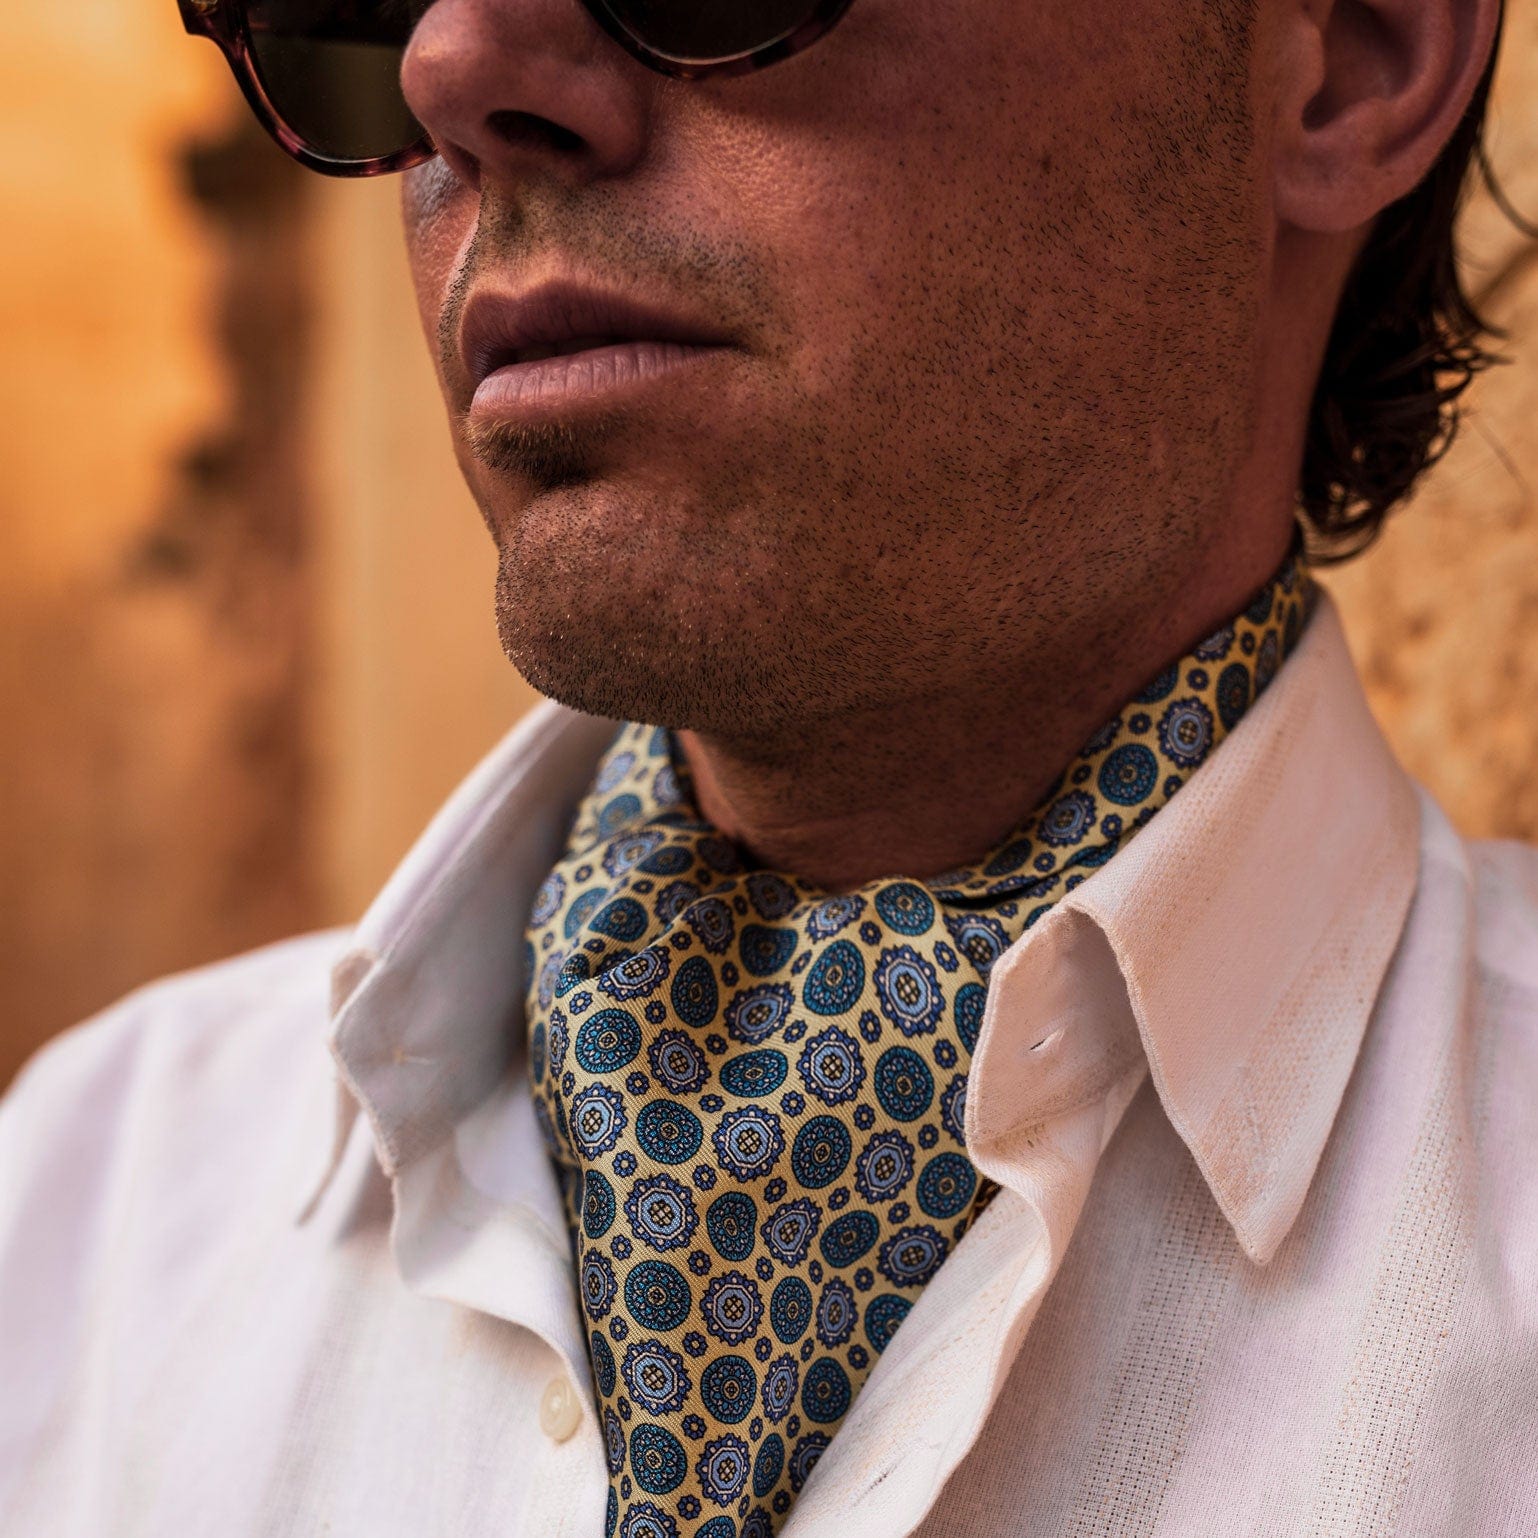 Men's Luxury Italian Designer Cravat Tie Ascot